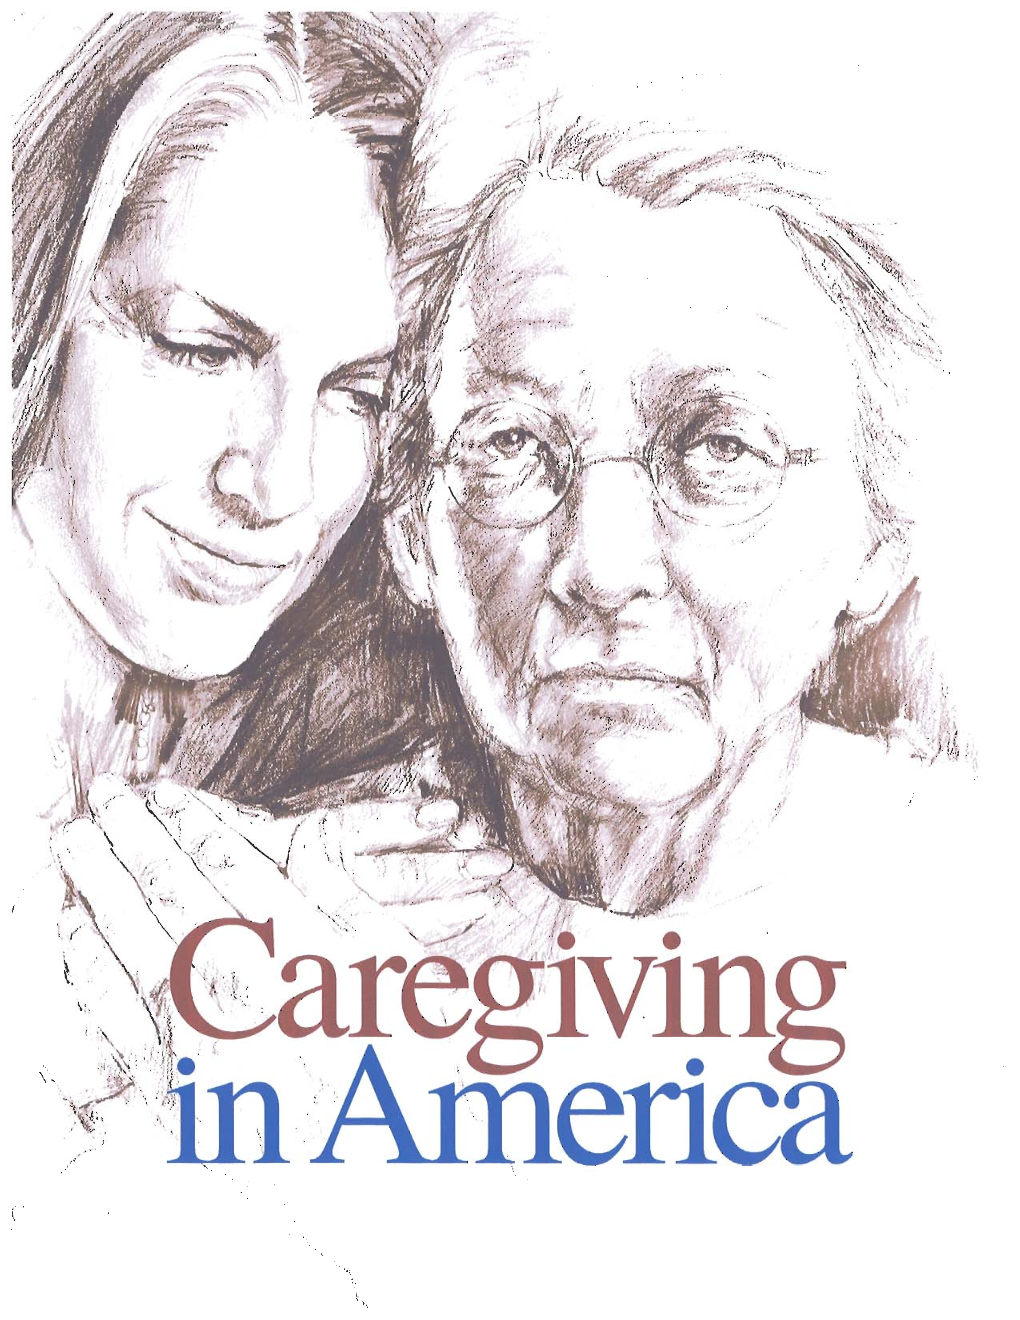 Caregiving in America